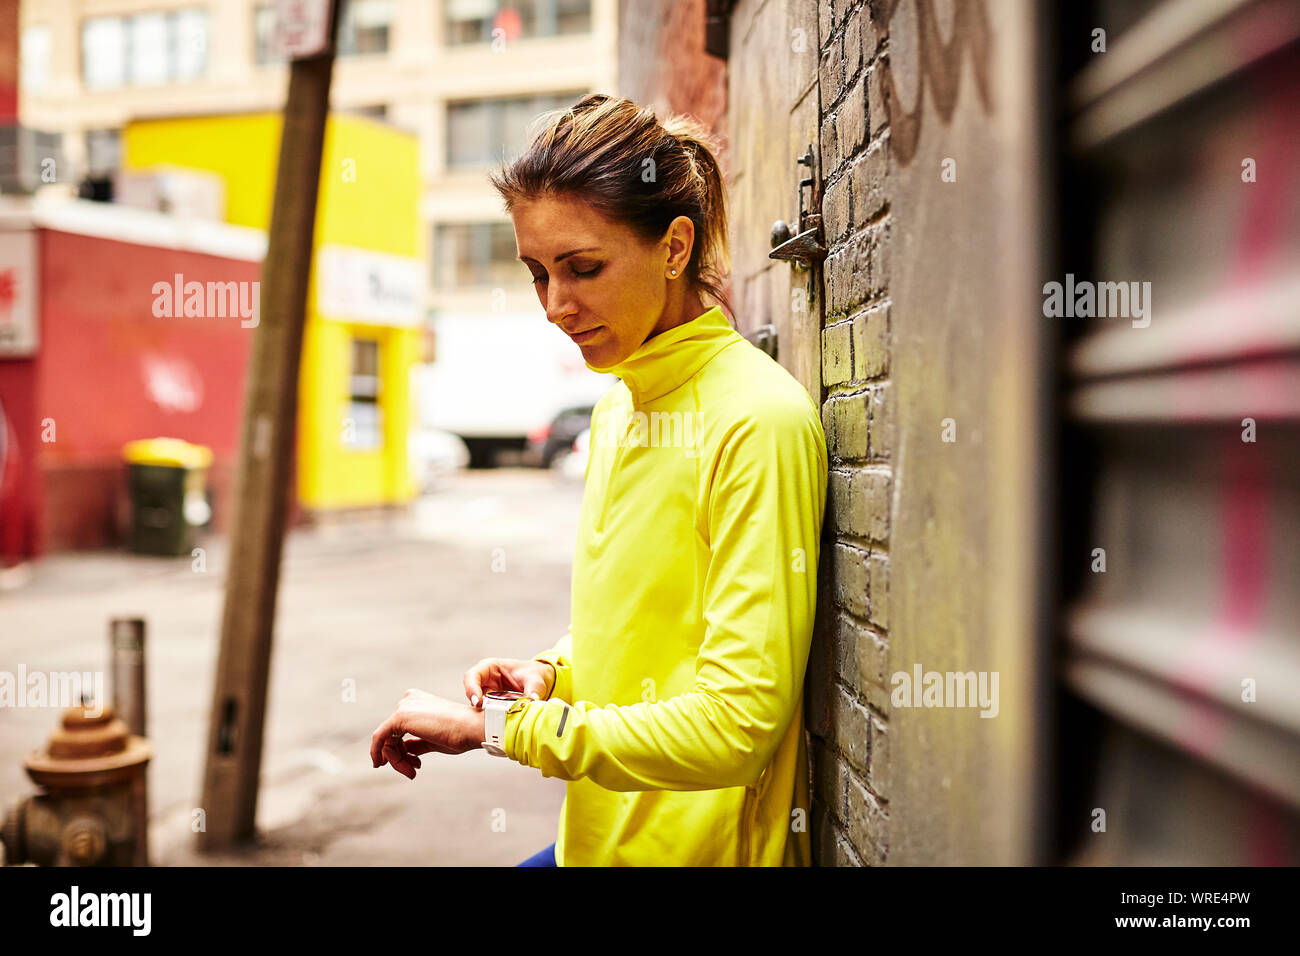 Una mujer colocando su reloj fitness en una calle de la ciudad. Foto de stock